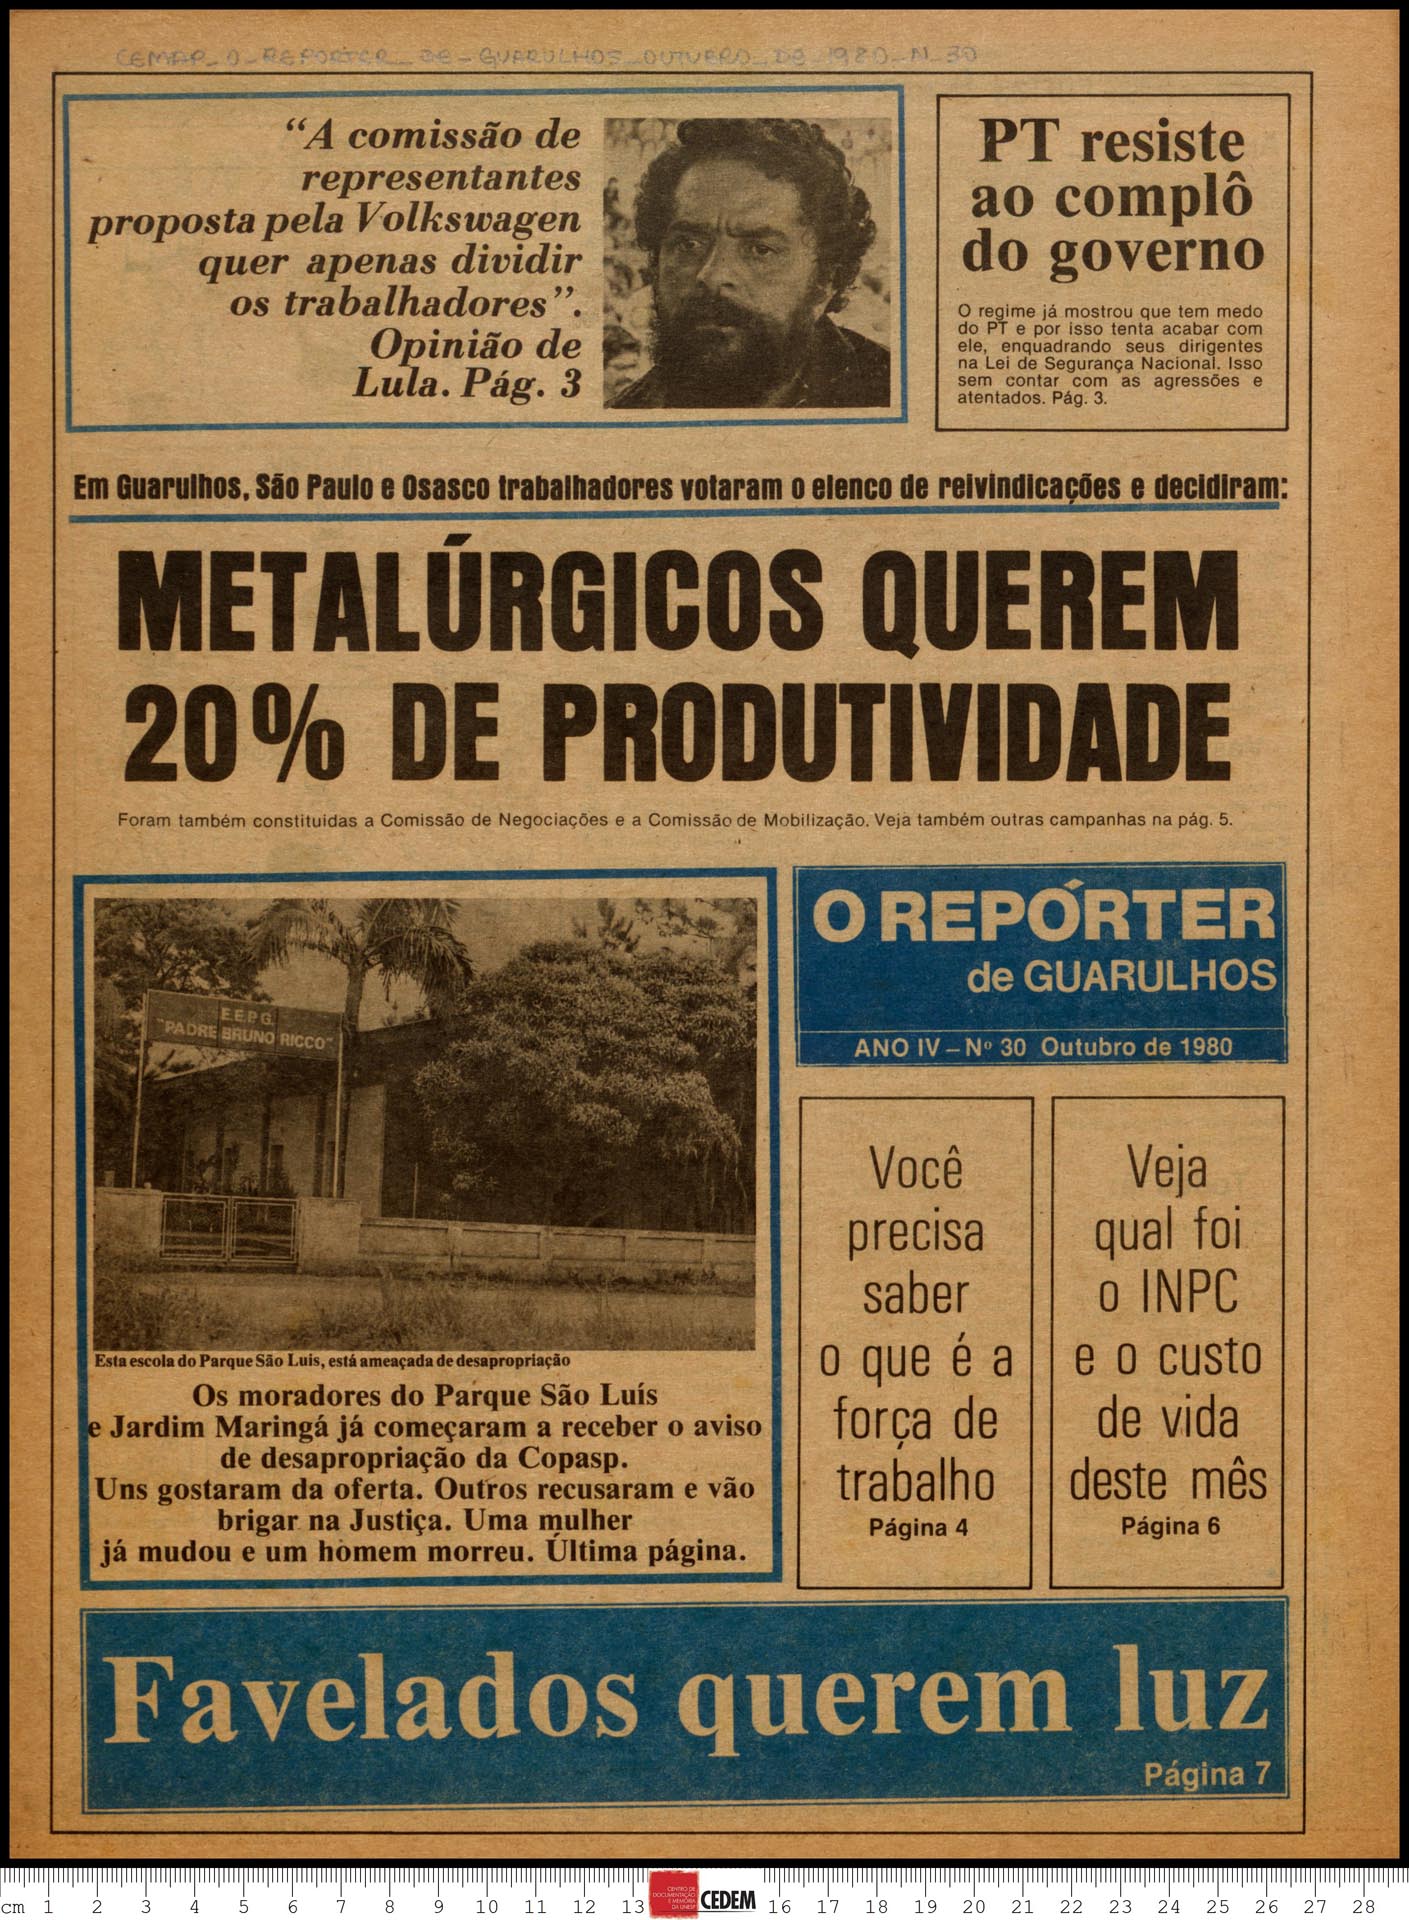 O reportér de Guarulhos - 30 - out. 1980